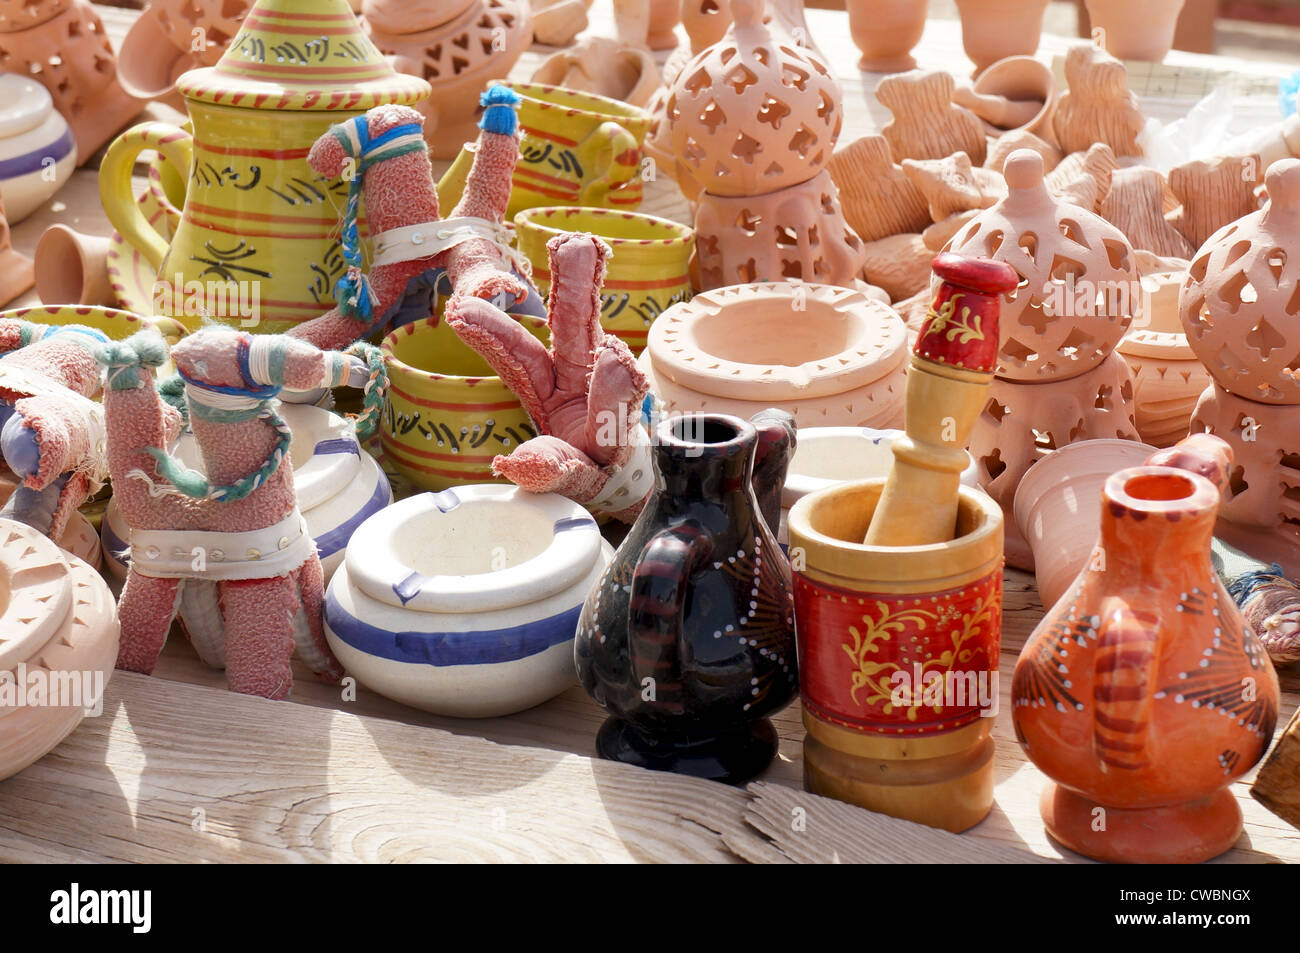 Les objets en céramique et de souvenirs dans un marché tunisien Banque D'Images